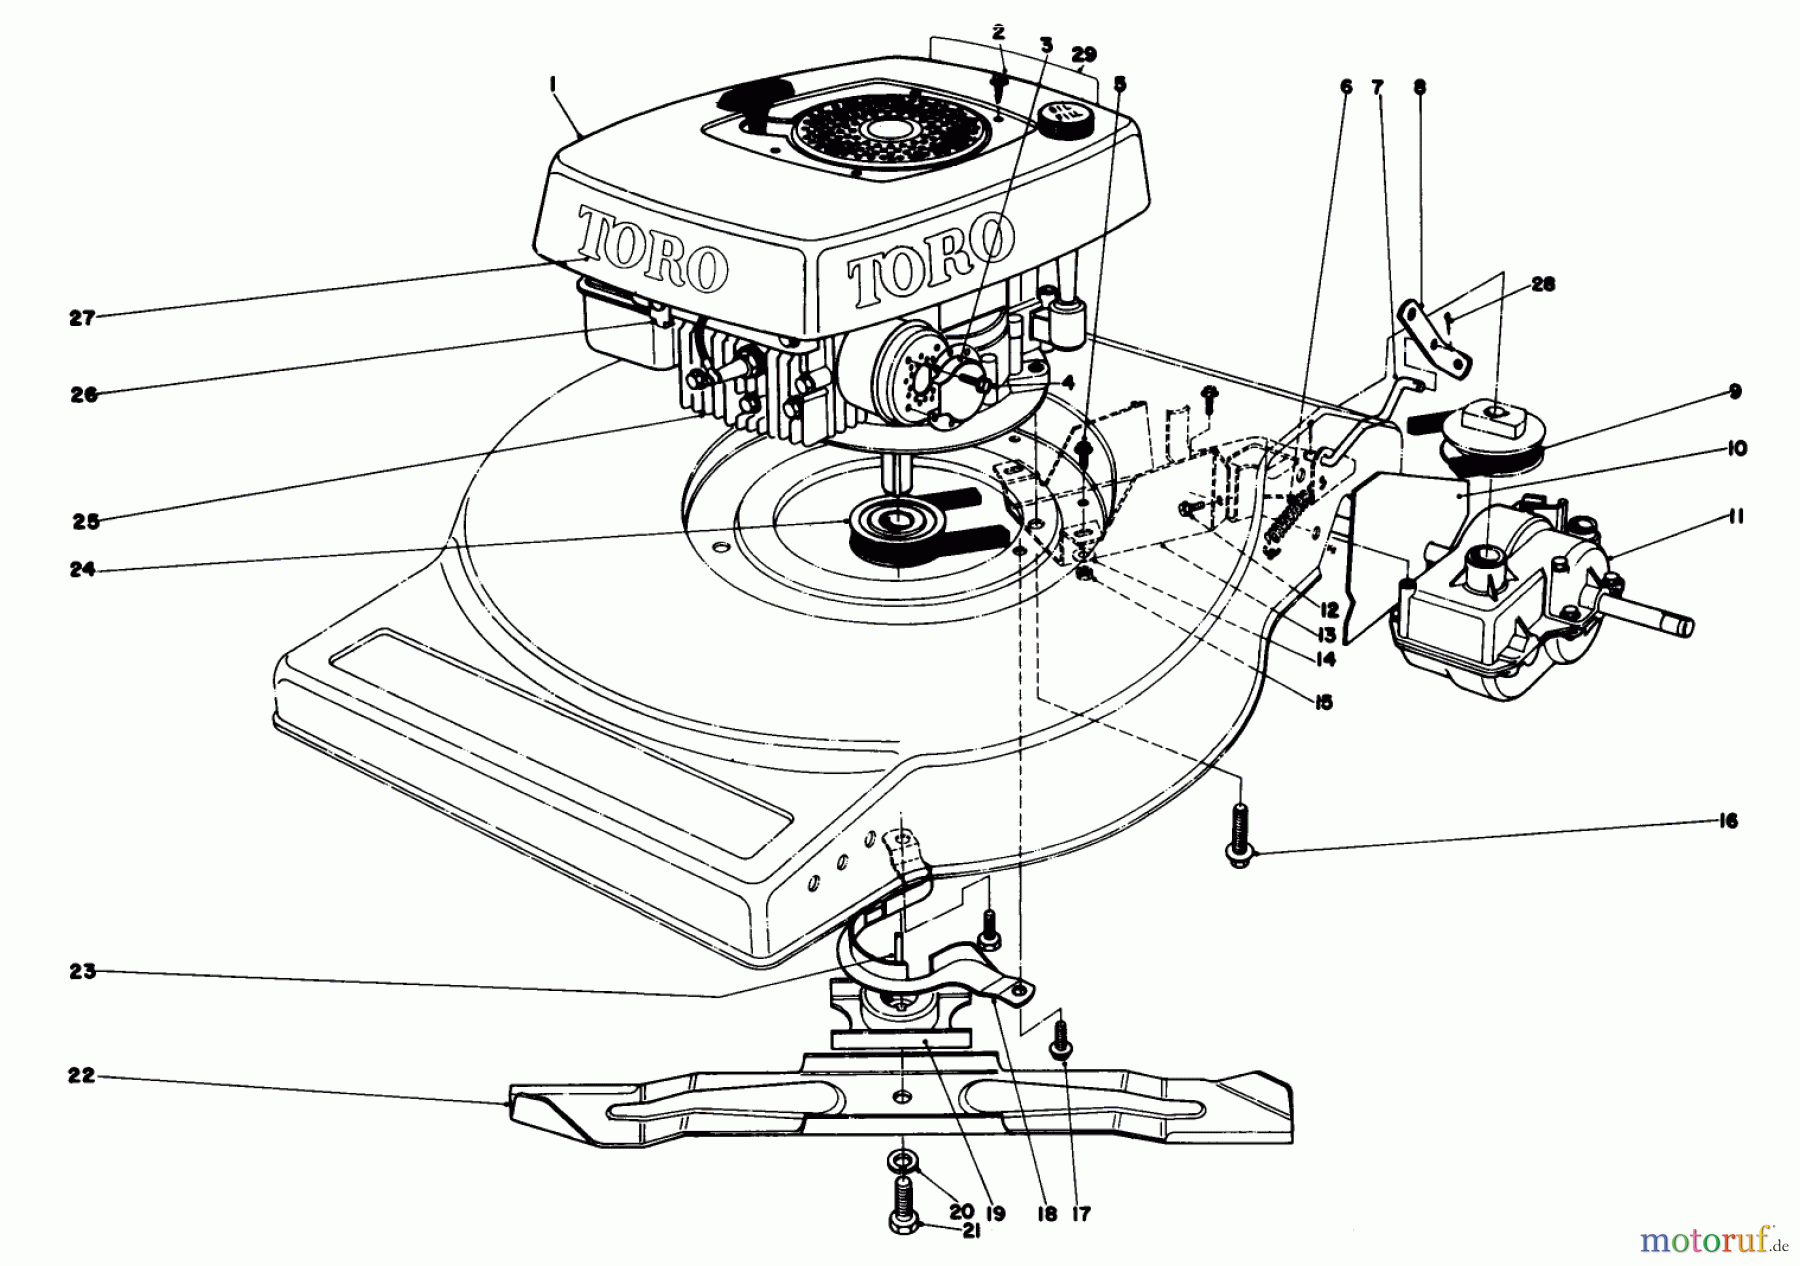  Toro Neu Mowers, Walk-Behind Seite 1 16940 - Toro Lawnmower, 1980 (0000001-0999999) ENGINE ASSEMBLY (MODEL NO. 16940)